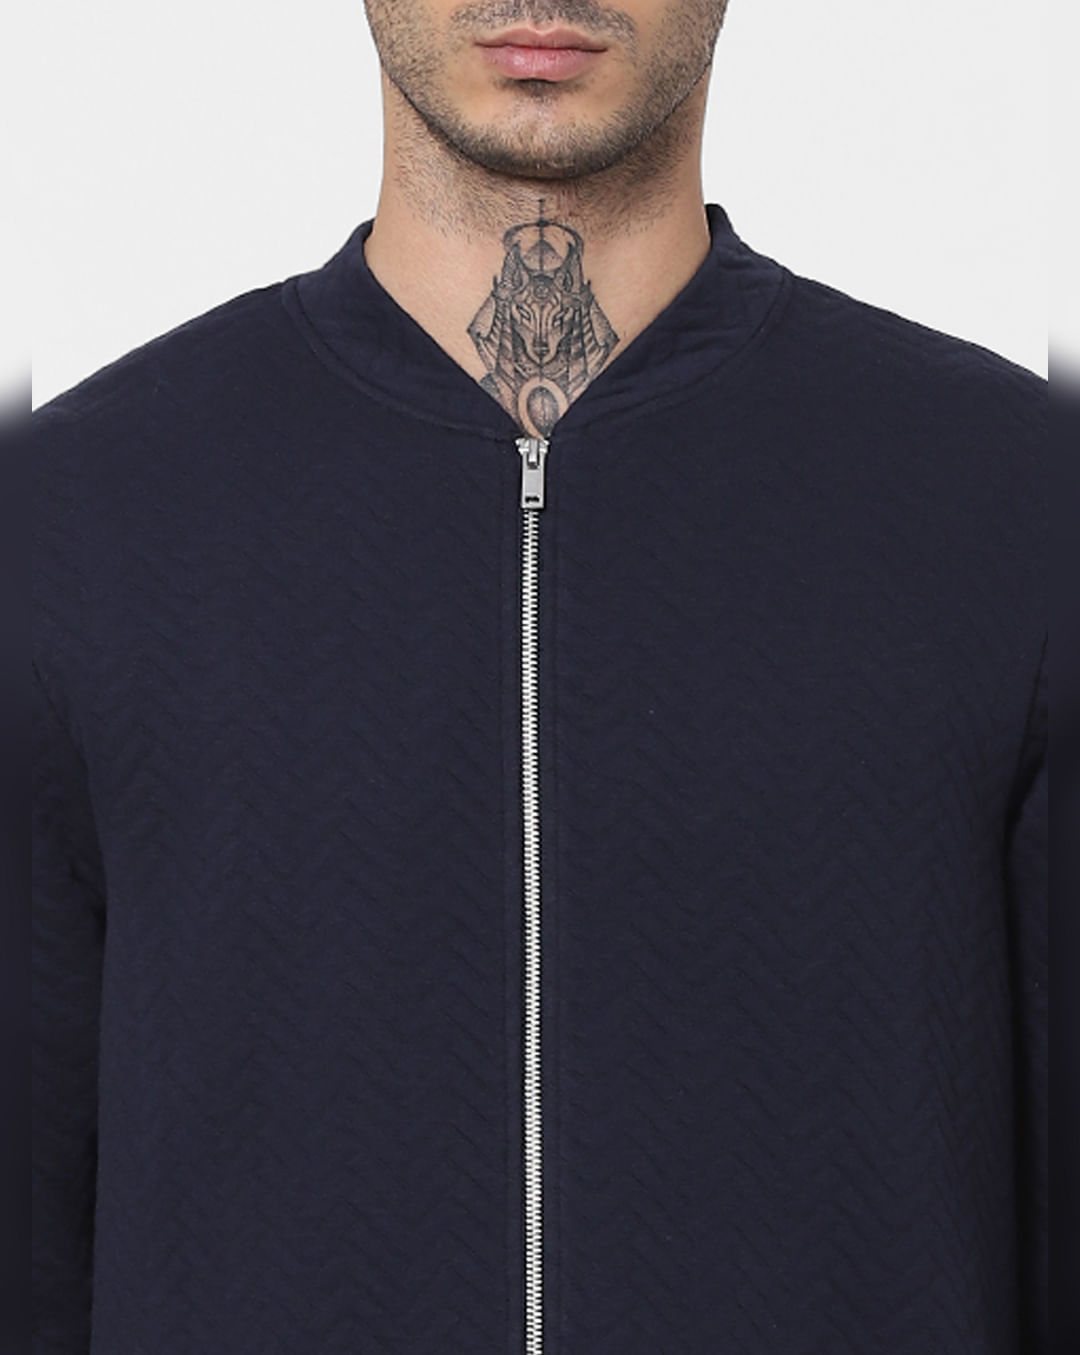 Buy Navy Blue Quilted Zip Up Sweatshirt For Men Online